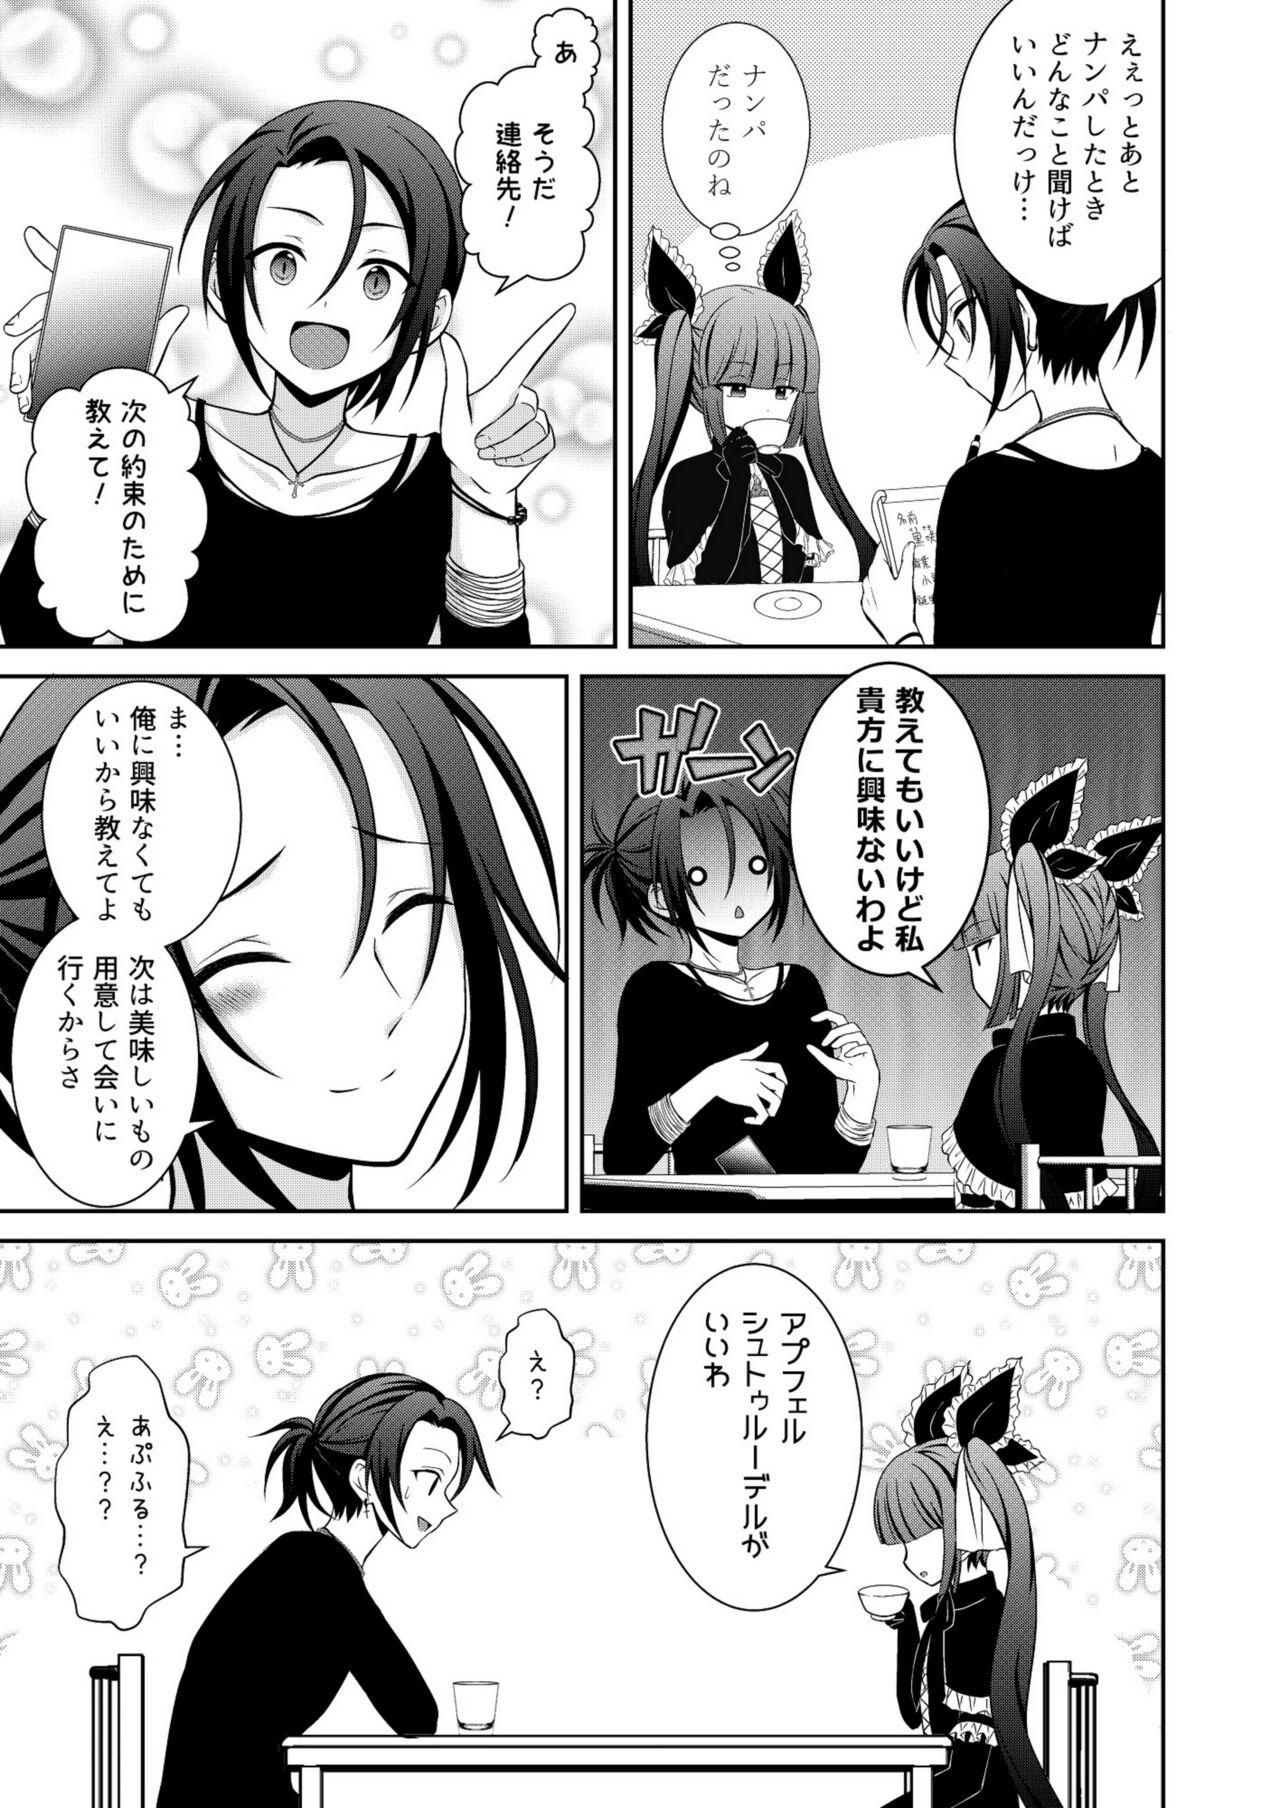 Foreplay ] Kuro Usagi-kei Joshi to Komono Ookami Mistress - Page 4